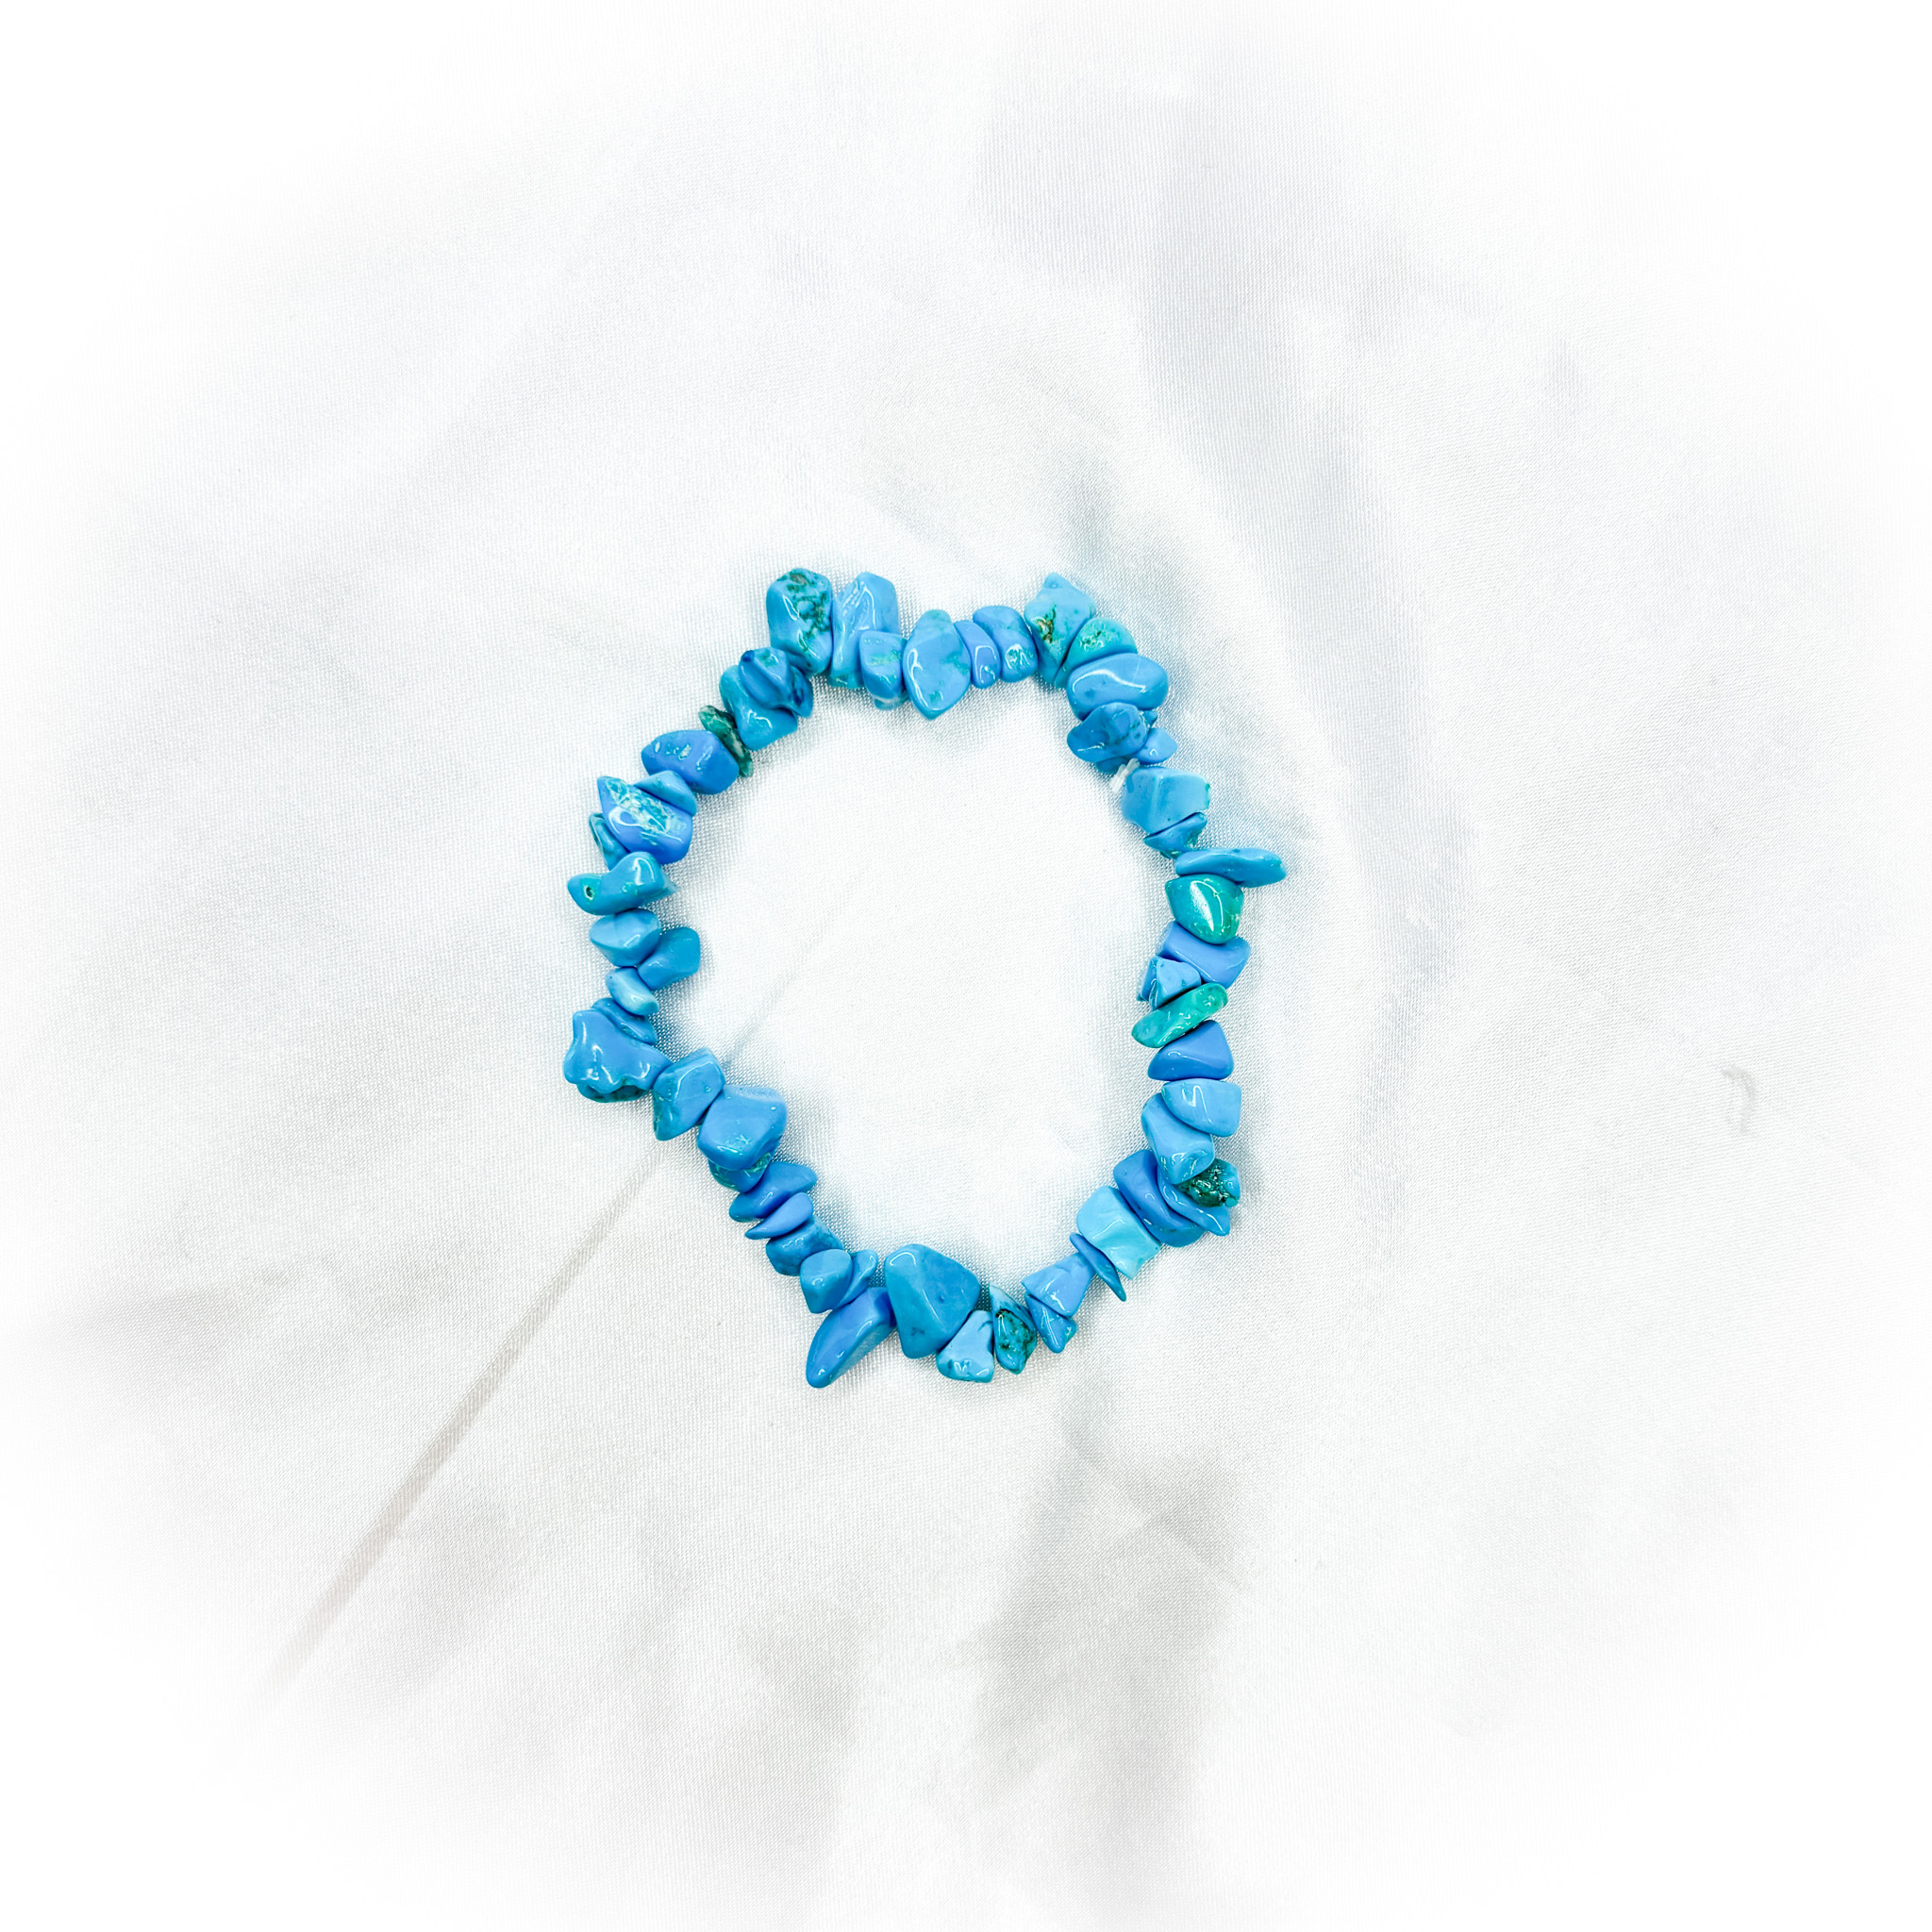 Blue Howlite Crystal Chip Bracelet